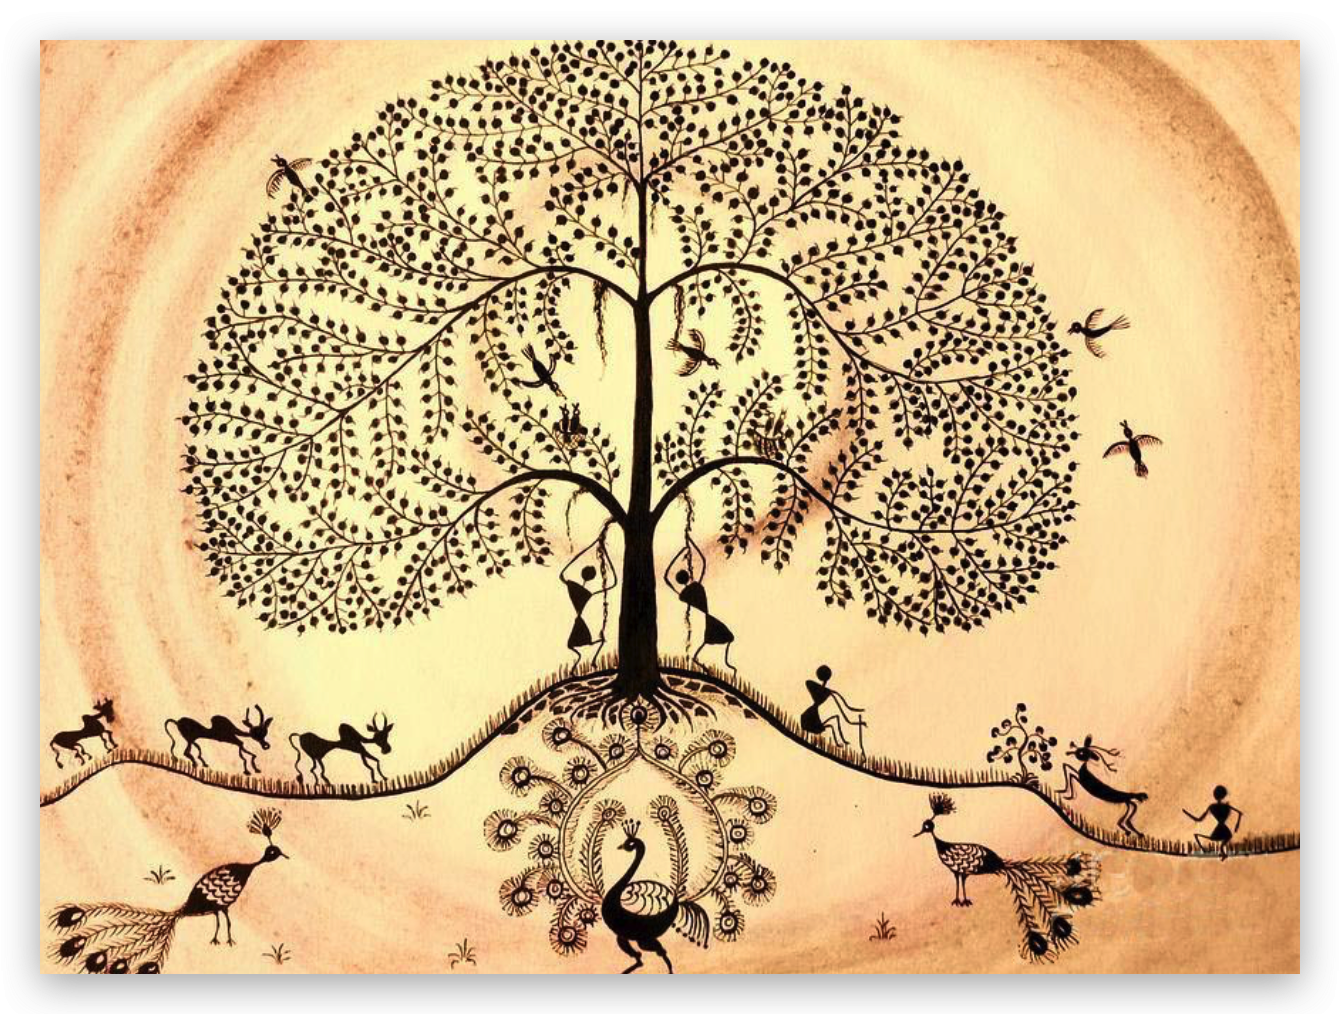 Дерево фусан китайская мифология. Мировое Древо Китая дерево фусан. Китайское Древо жизни Киен-му. Мировое Древо фусан картина. Древо культуры